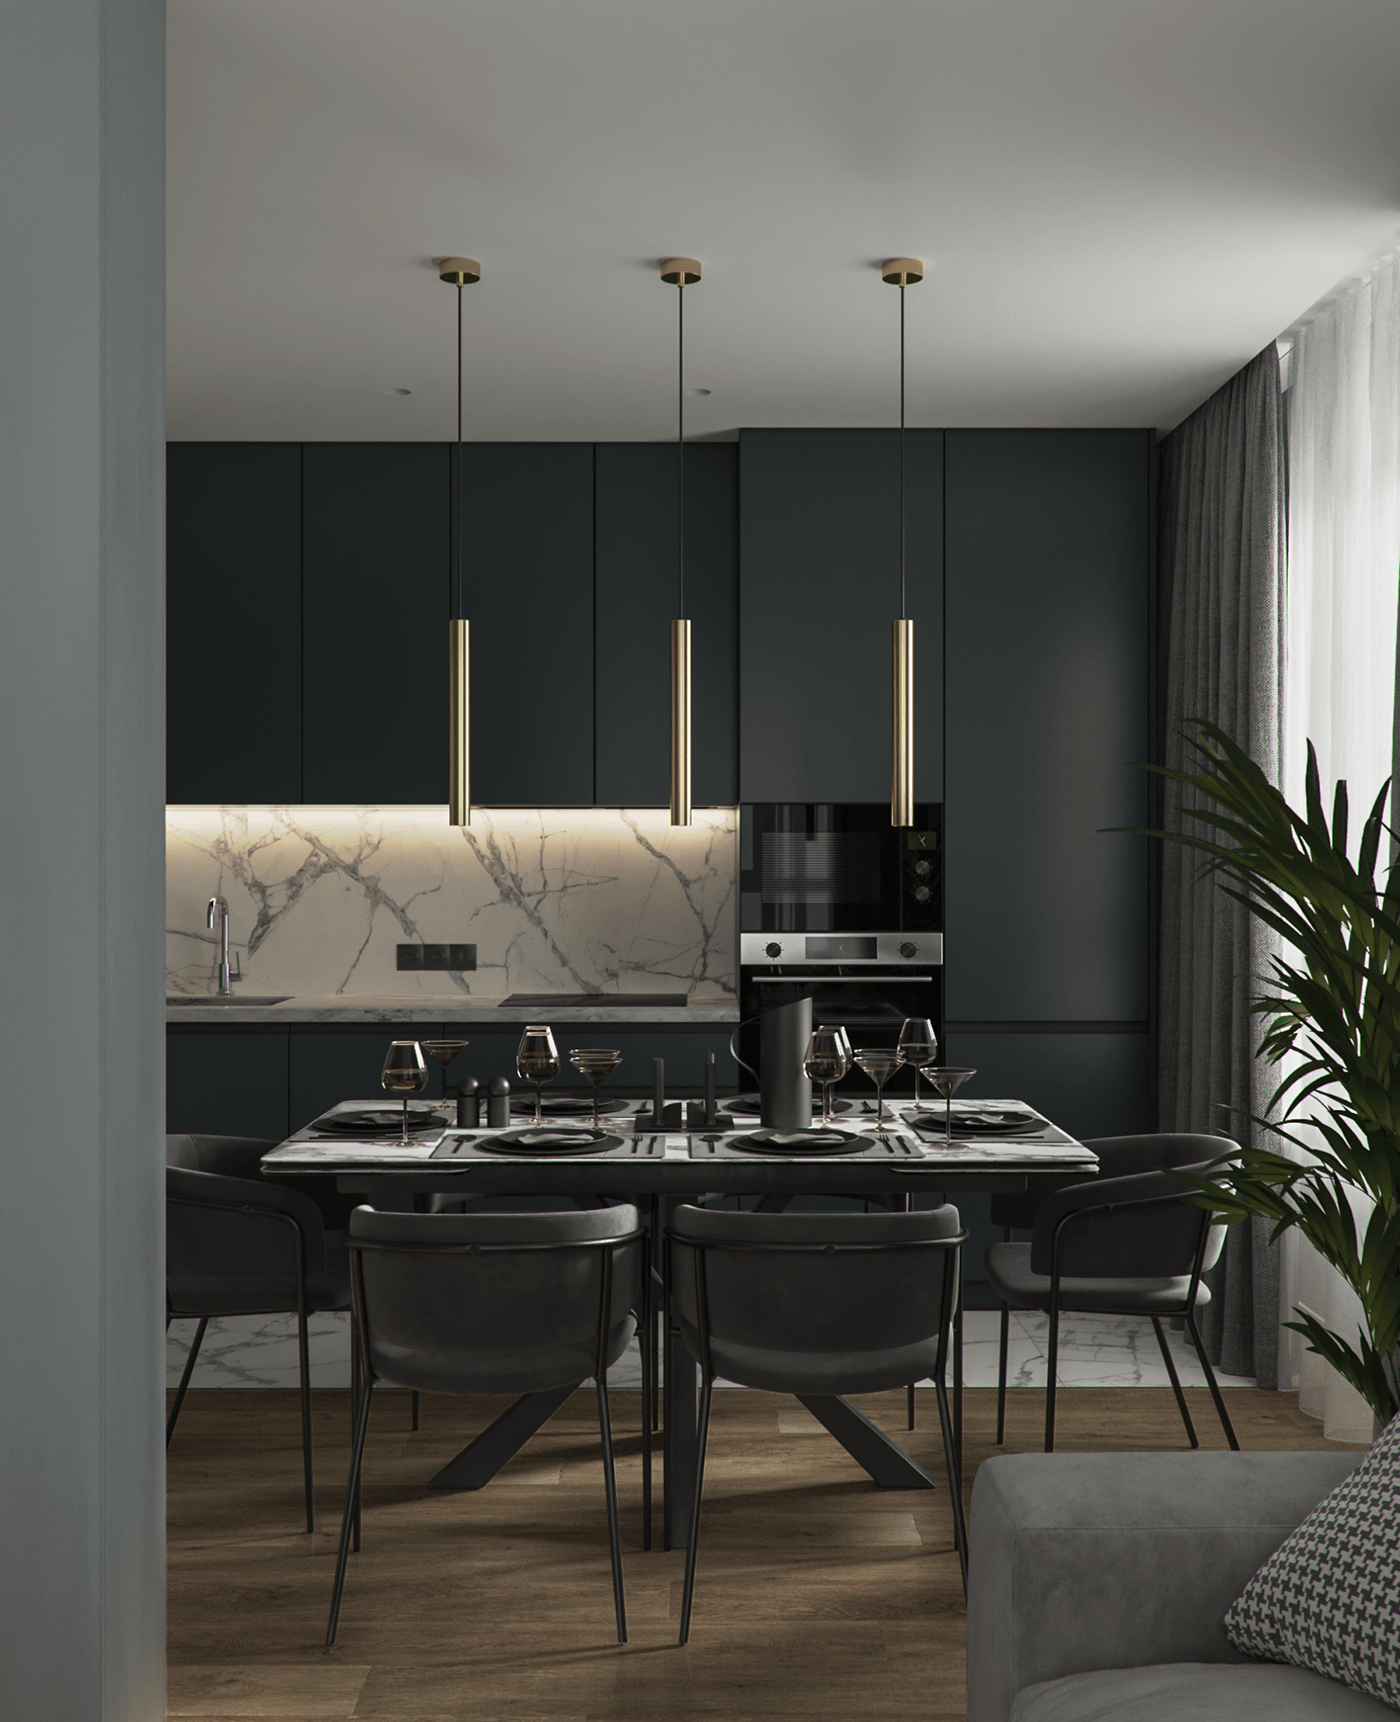 living room kitchen corona render  3d max Render